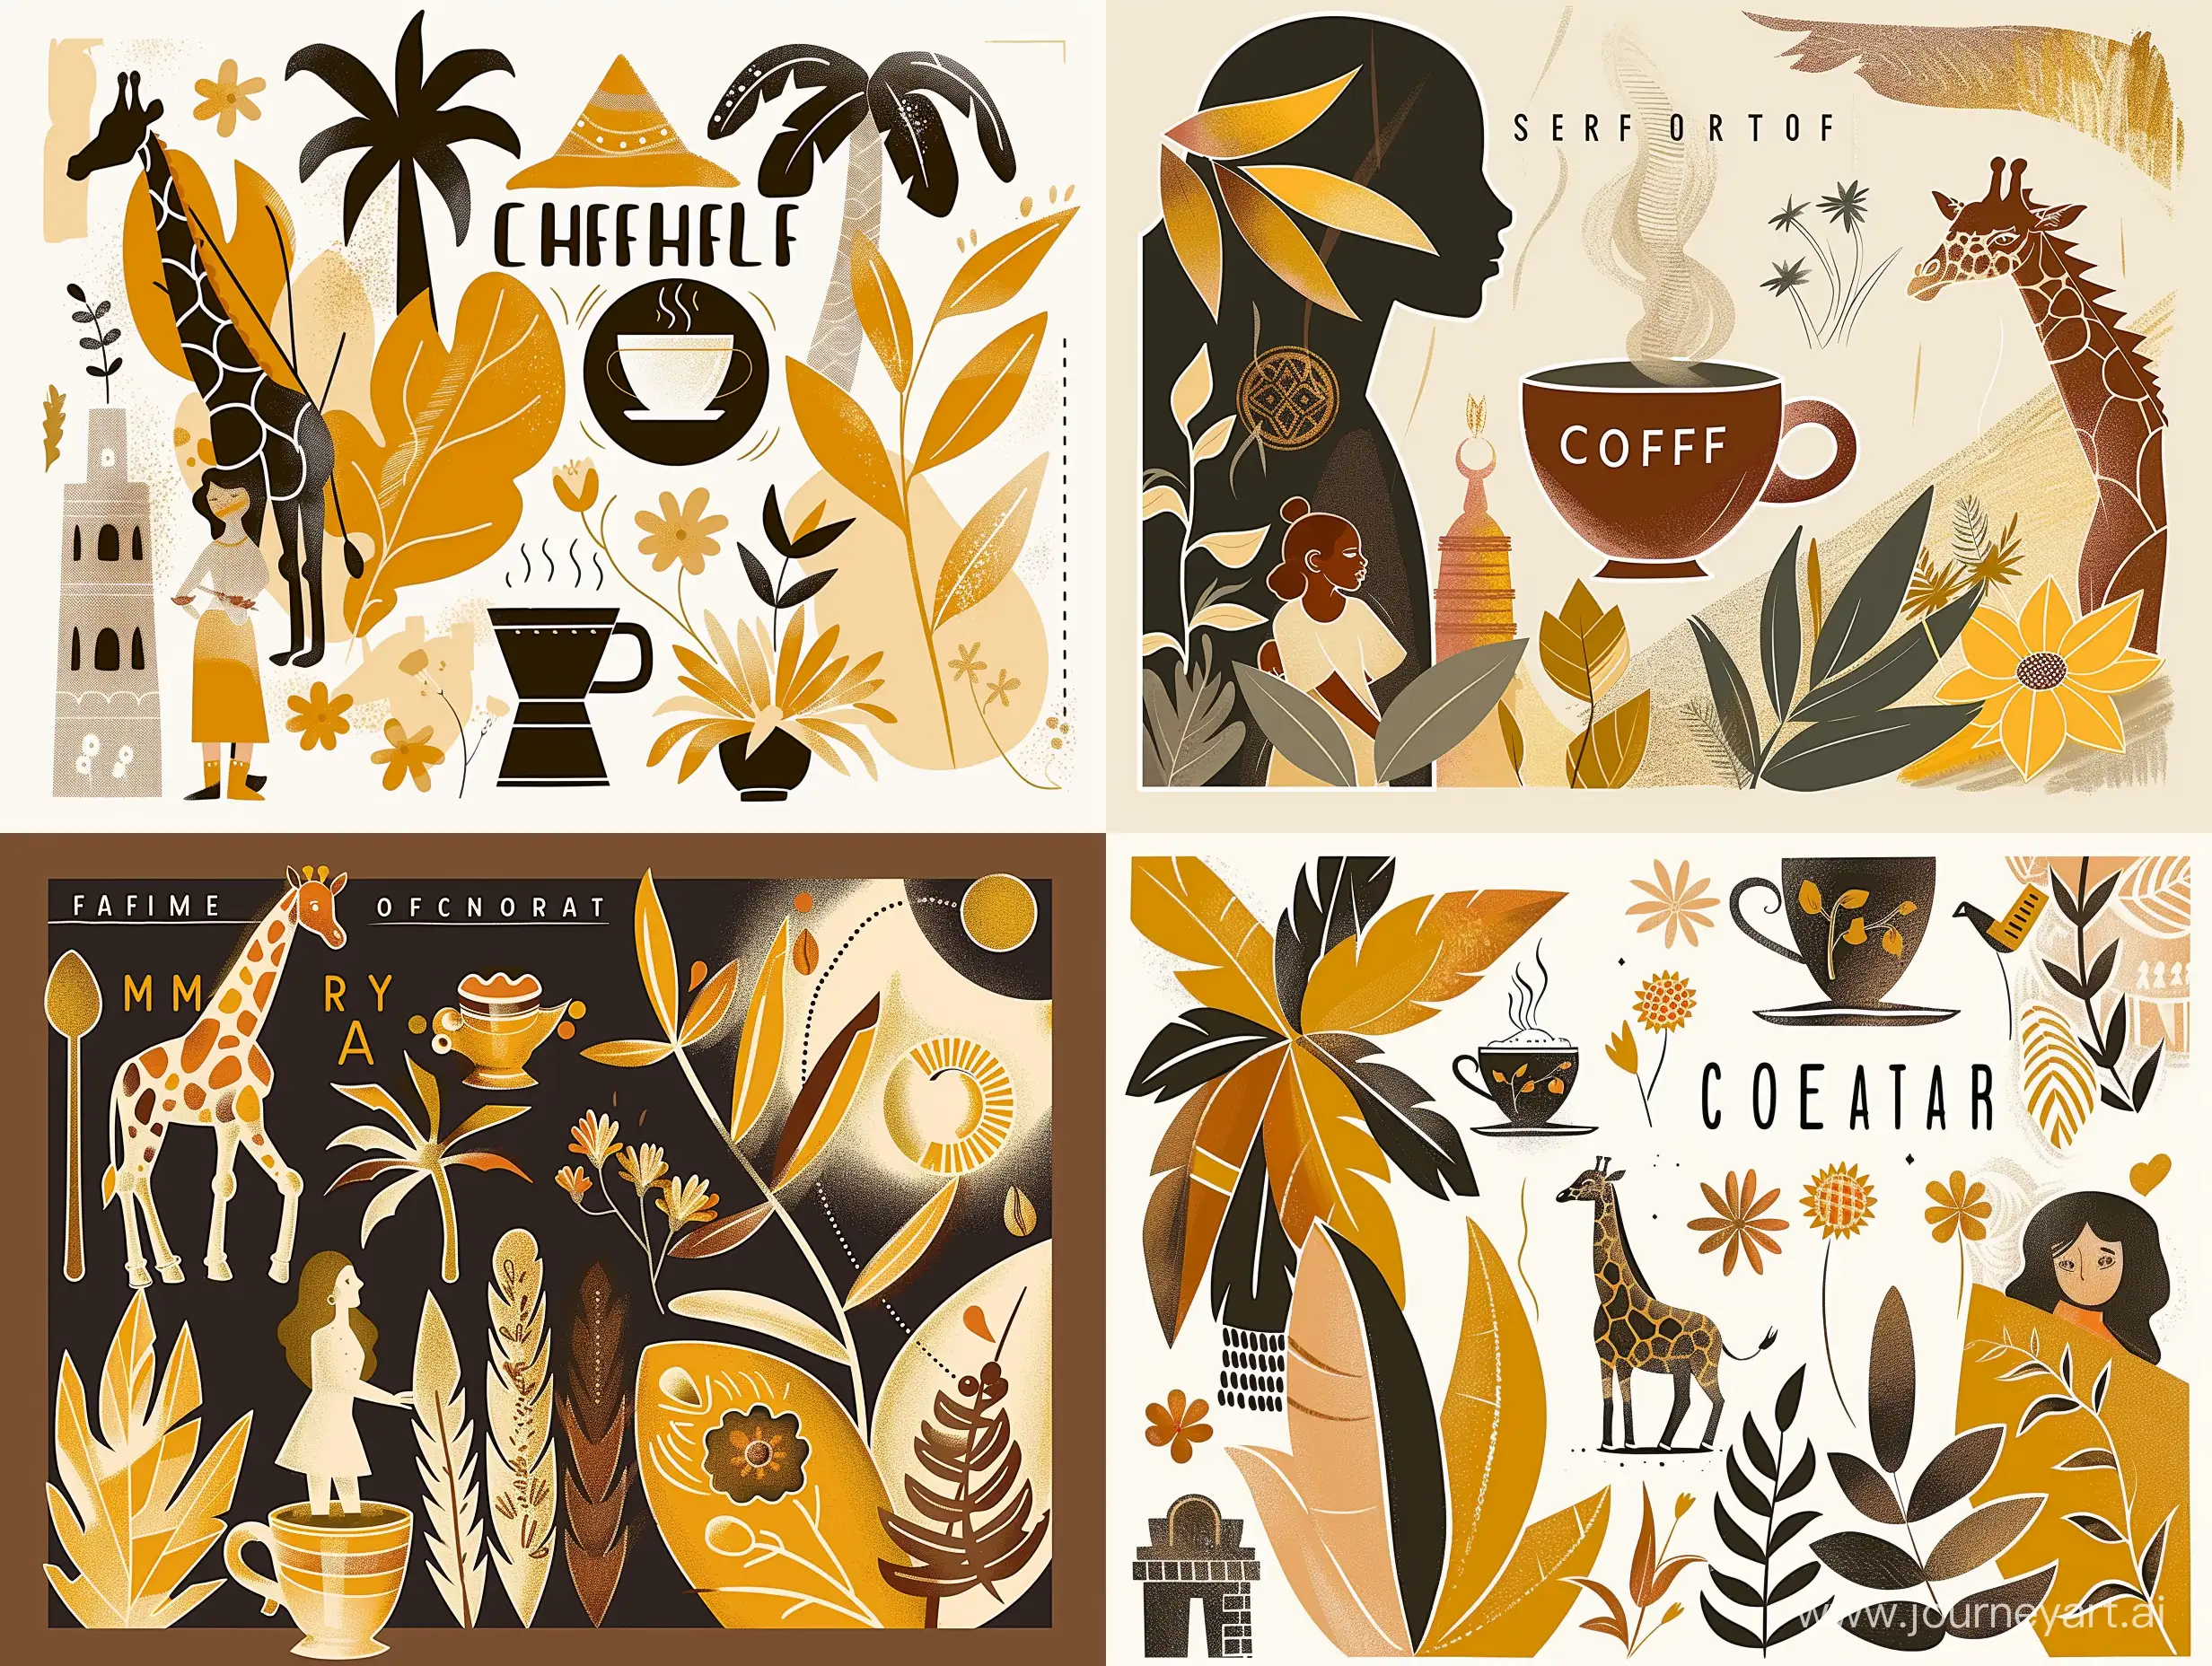 Иллюстрация кофе в чашке, символы Эфиопии, девушка, жираф, листья пальмы, кофе, цветы Эфиопии в коричневых, желтых, оранжевых, черных цветах- serf  https://i.pinimg.com/originals/f0/65/dc/f065dc8212fbe5f1570a615095304db9.jpg